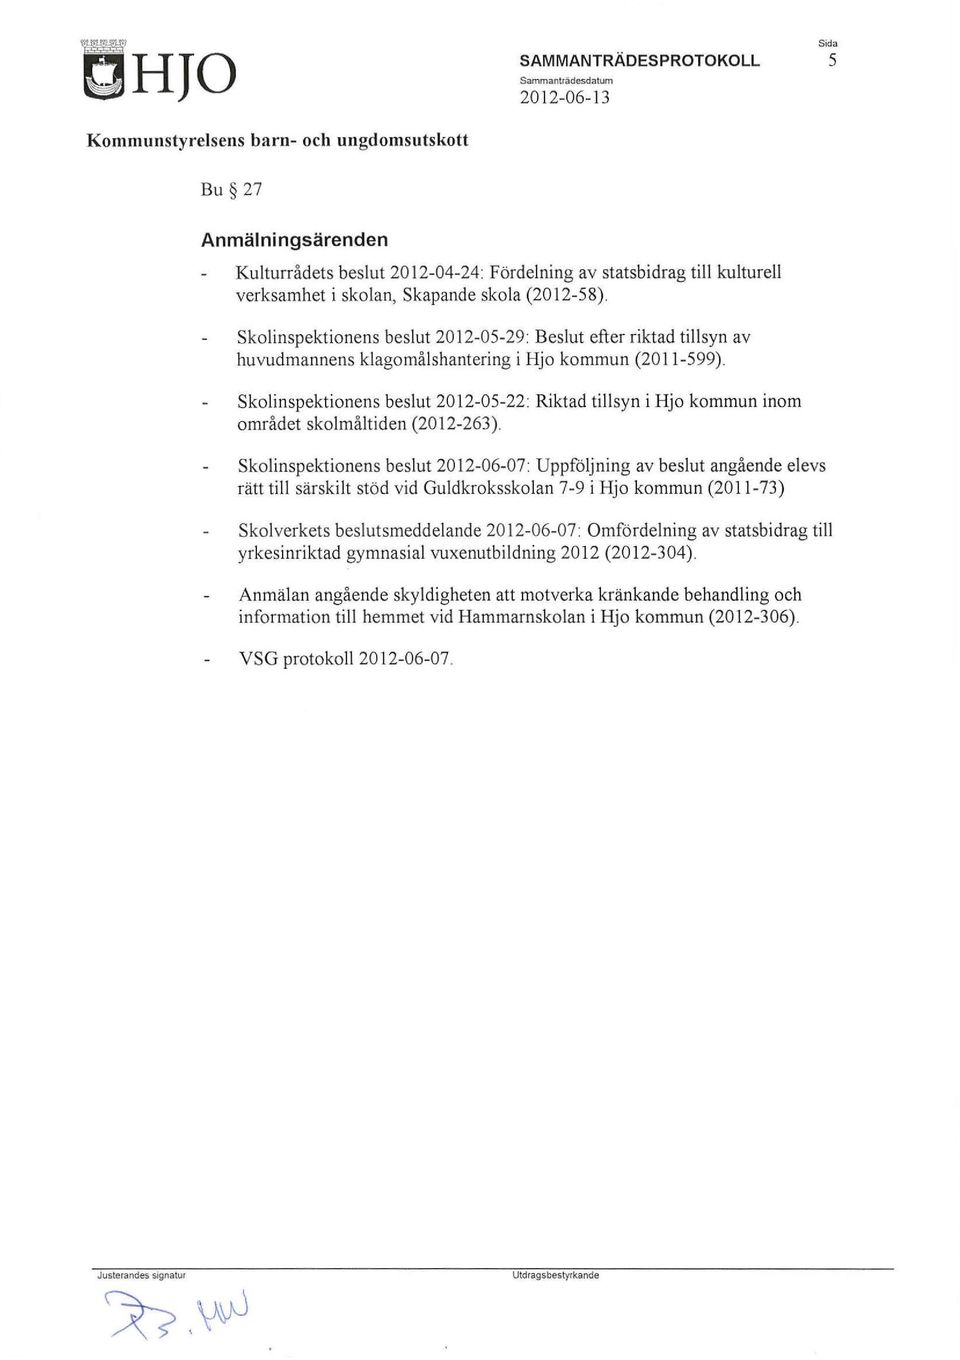 skolinspektionens beslut 2012-05-22: Riktad tillsyn i Hjo kommun inom området skolmåltiden (2012-263).